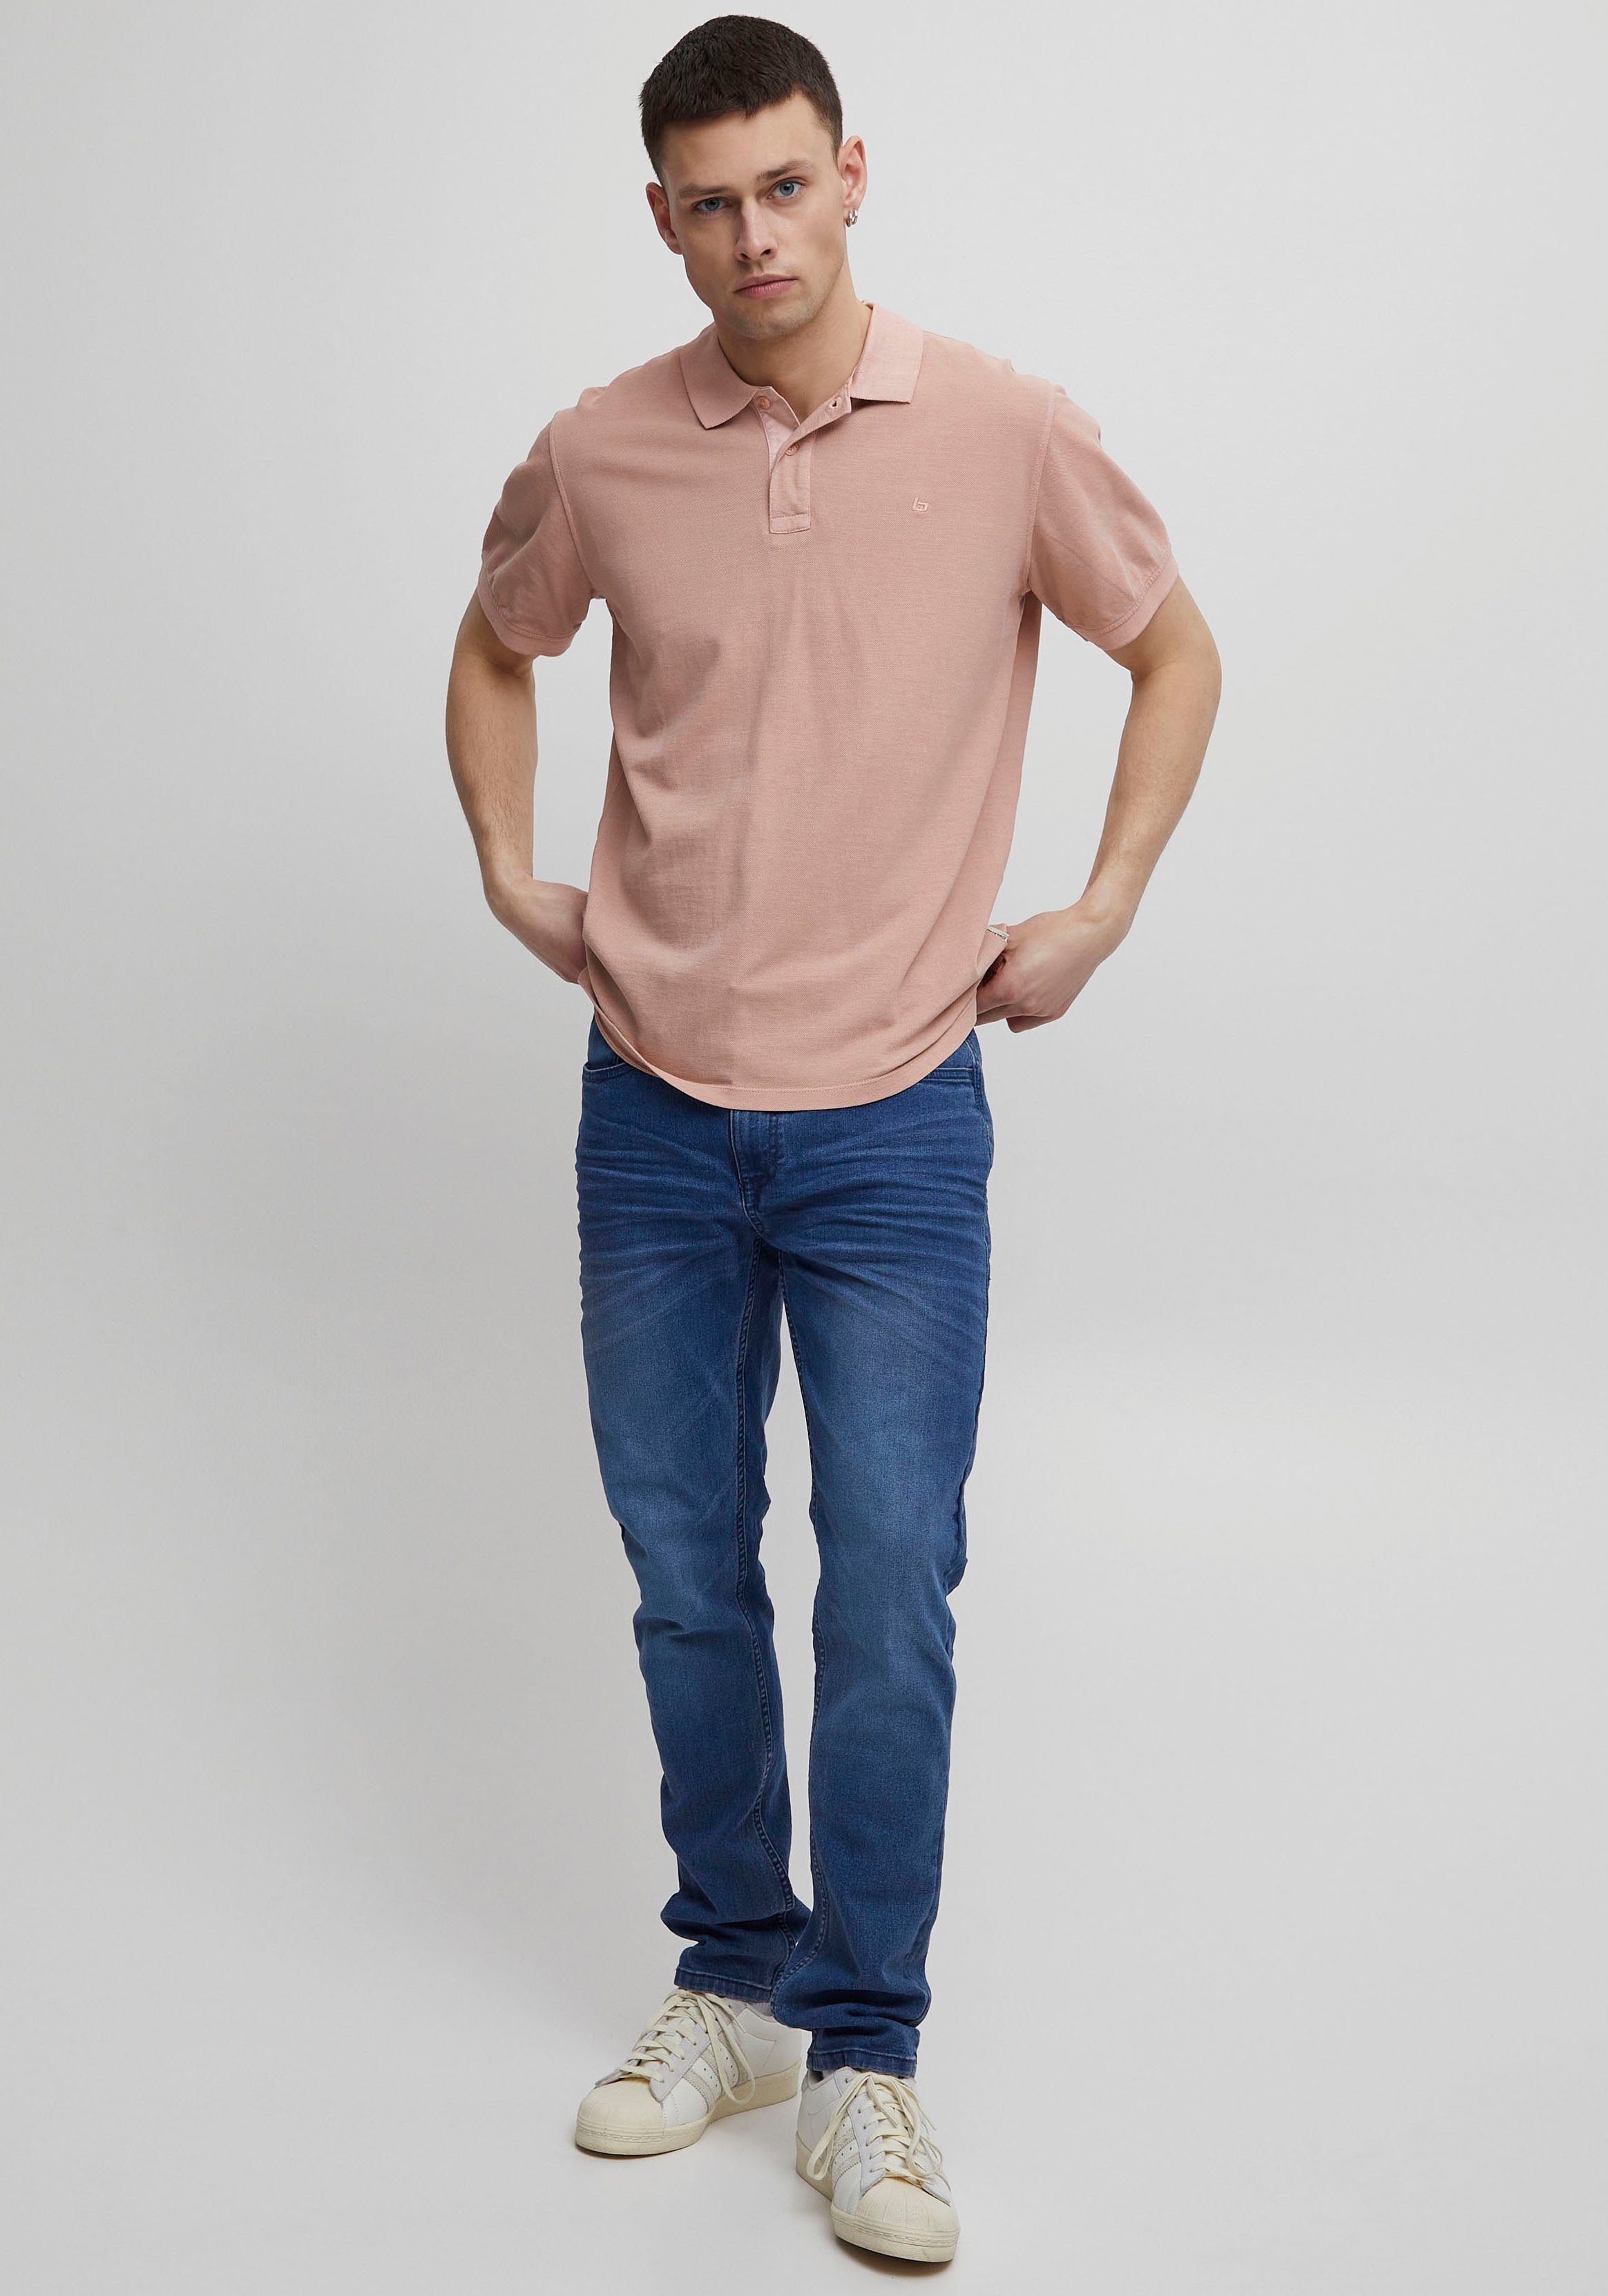 pink BL-Poloshirt Blend Poloshirt